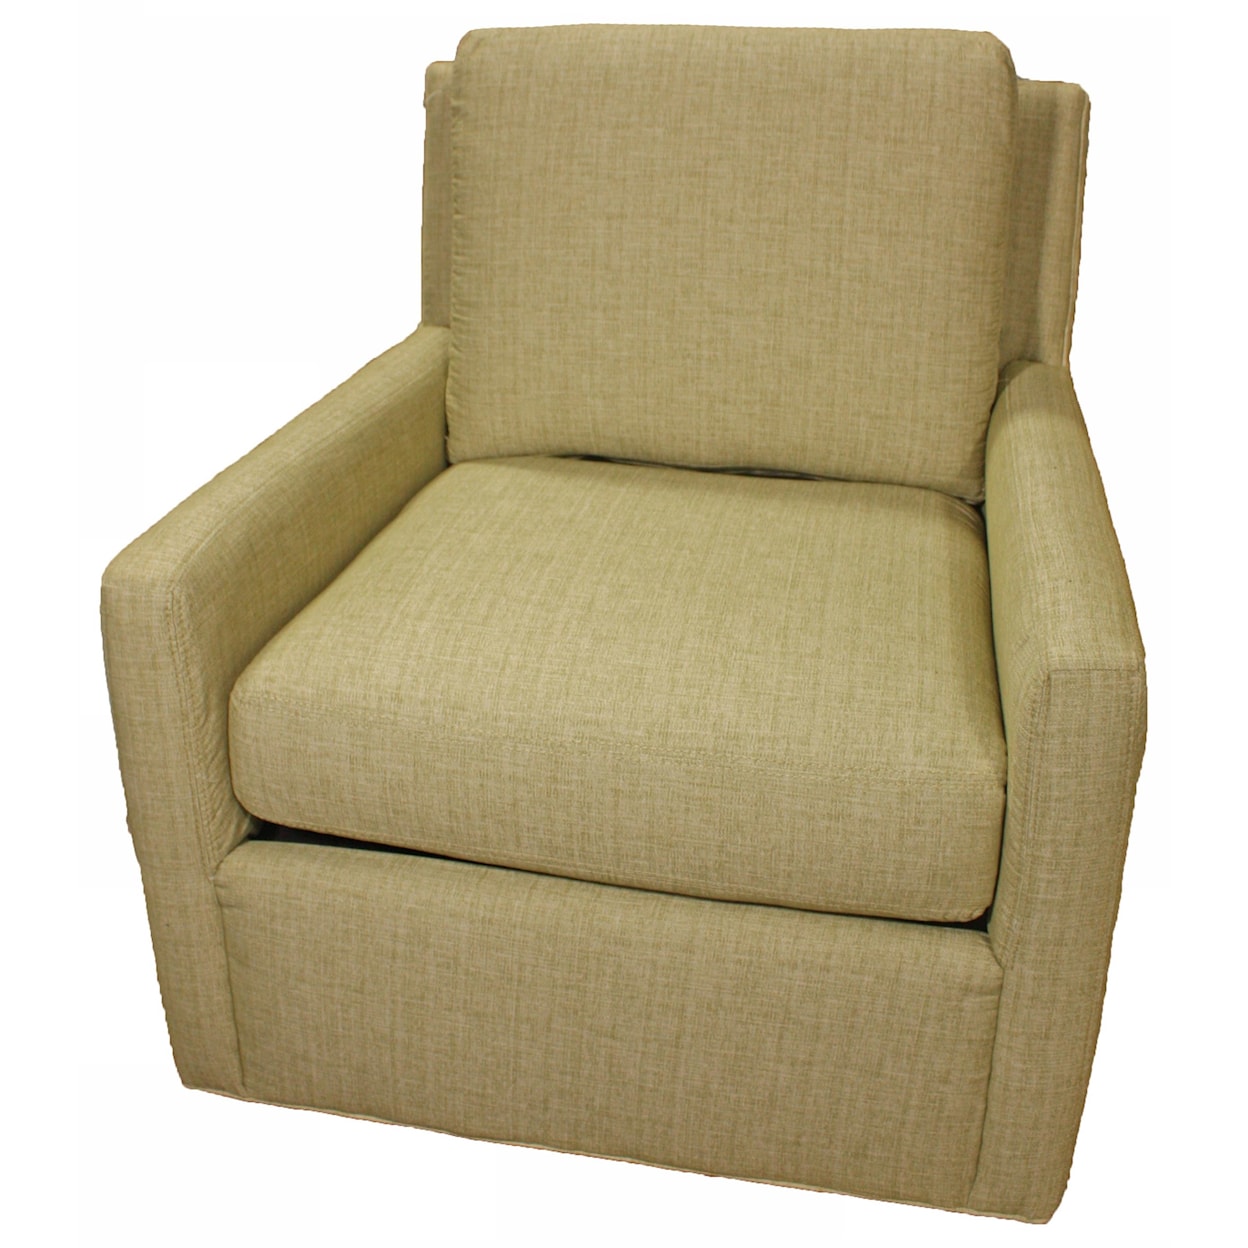 England Quaid 2D00 Swivel Chair